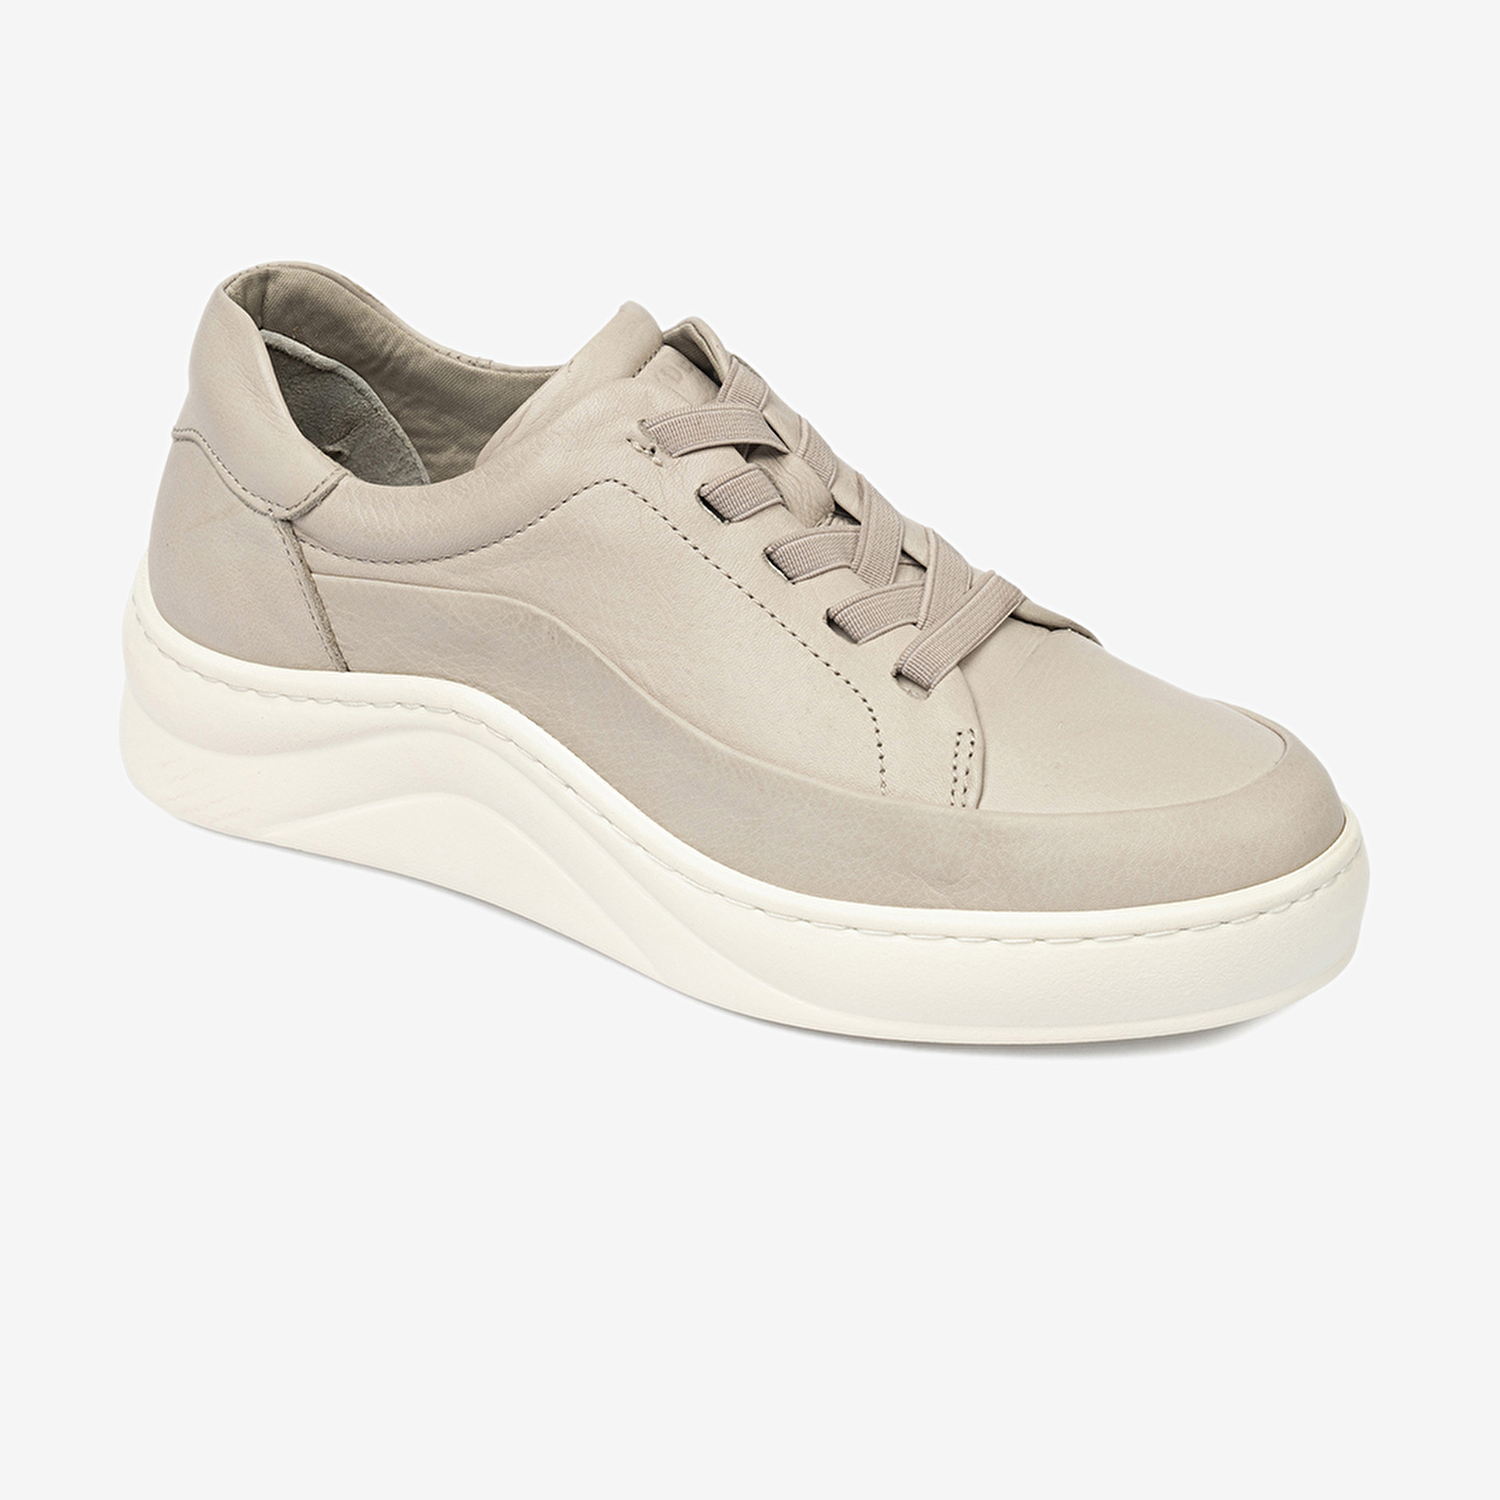 Kadın Vizon Hakiki Deri Sneaker Ayakkabı 4Y2FA59052-1